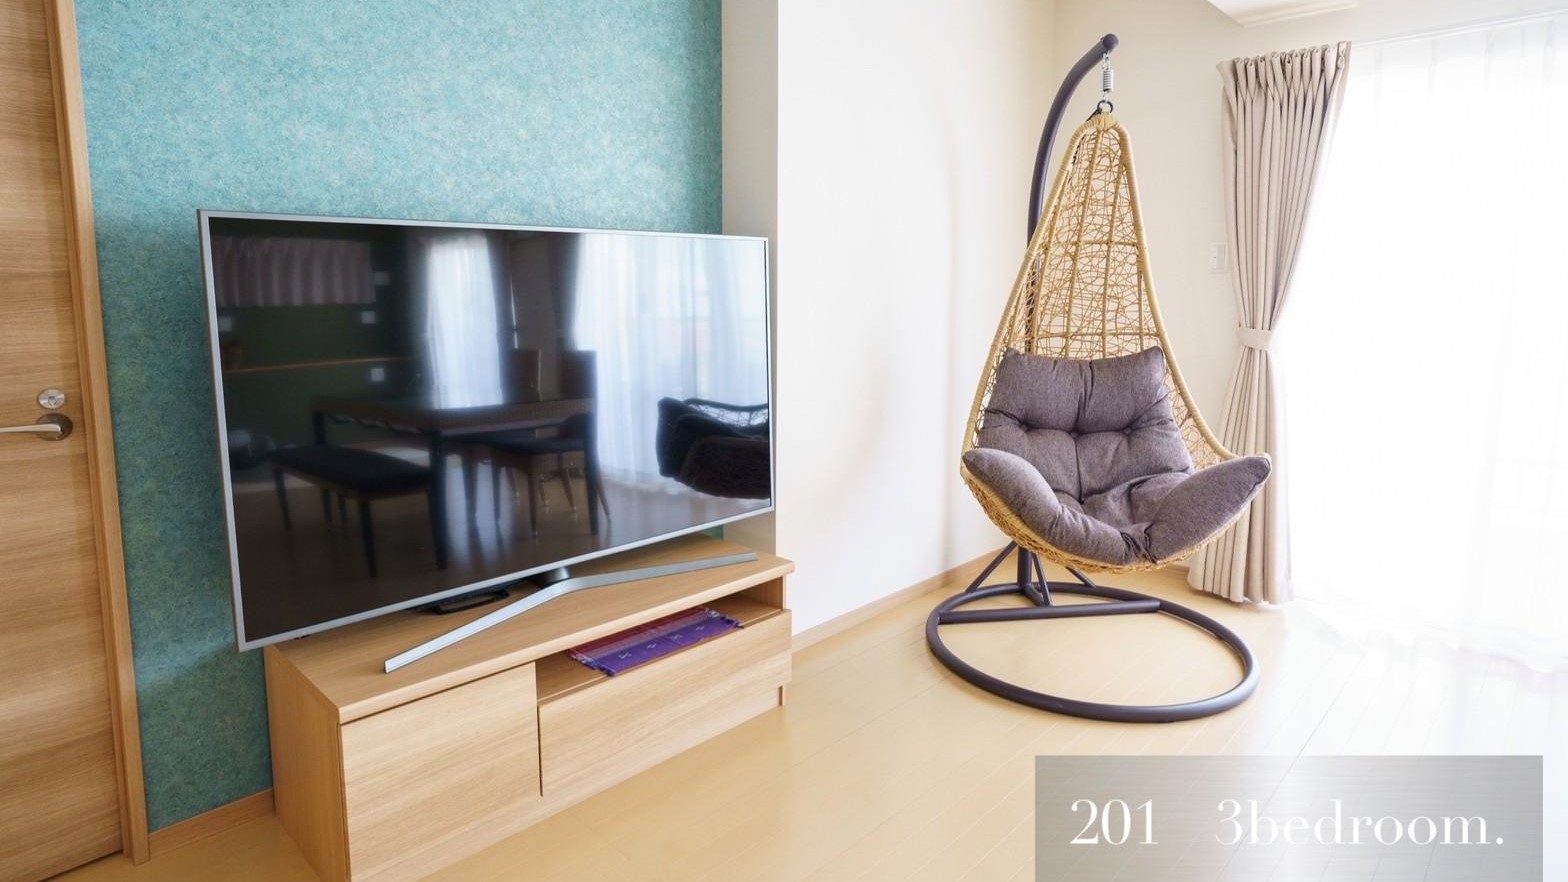 201：インテリアはラタン調の家具で統一され、優しい色合いのグリーンやパープルがアクセント